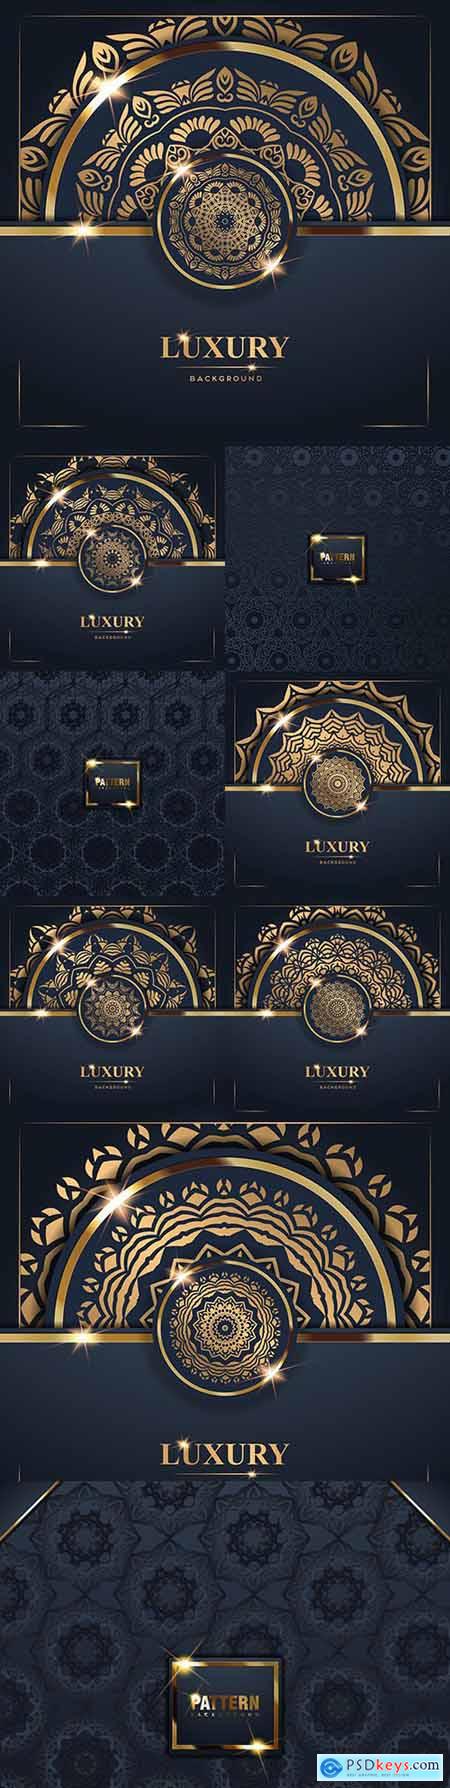 Mandala luxury gold decorative background